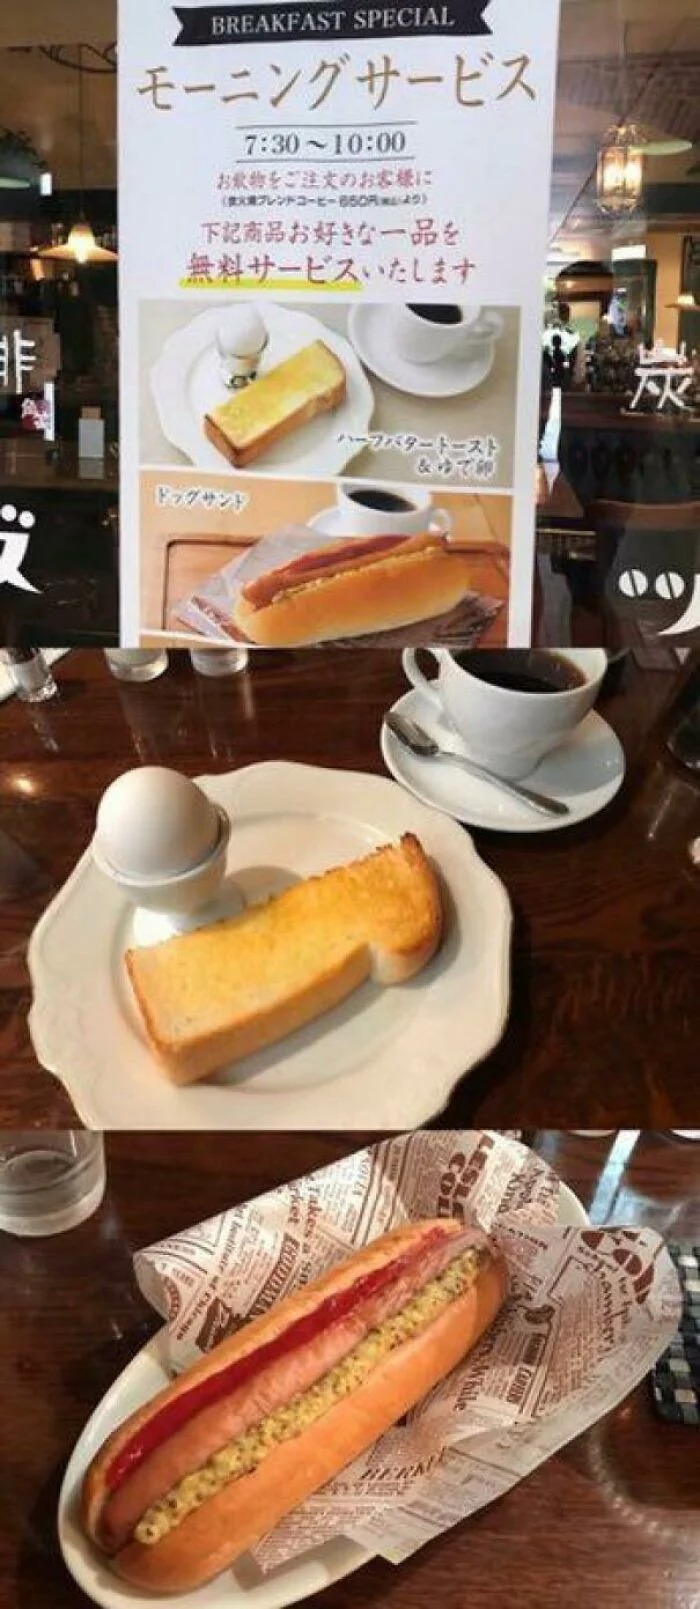 Bigpicture.ru Упаковка и еда в Японии